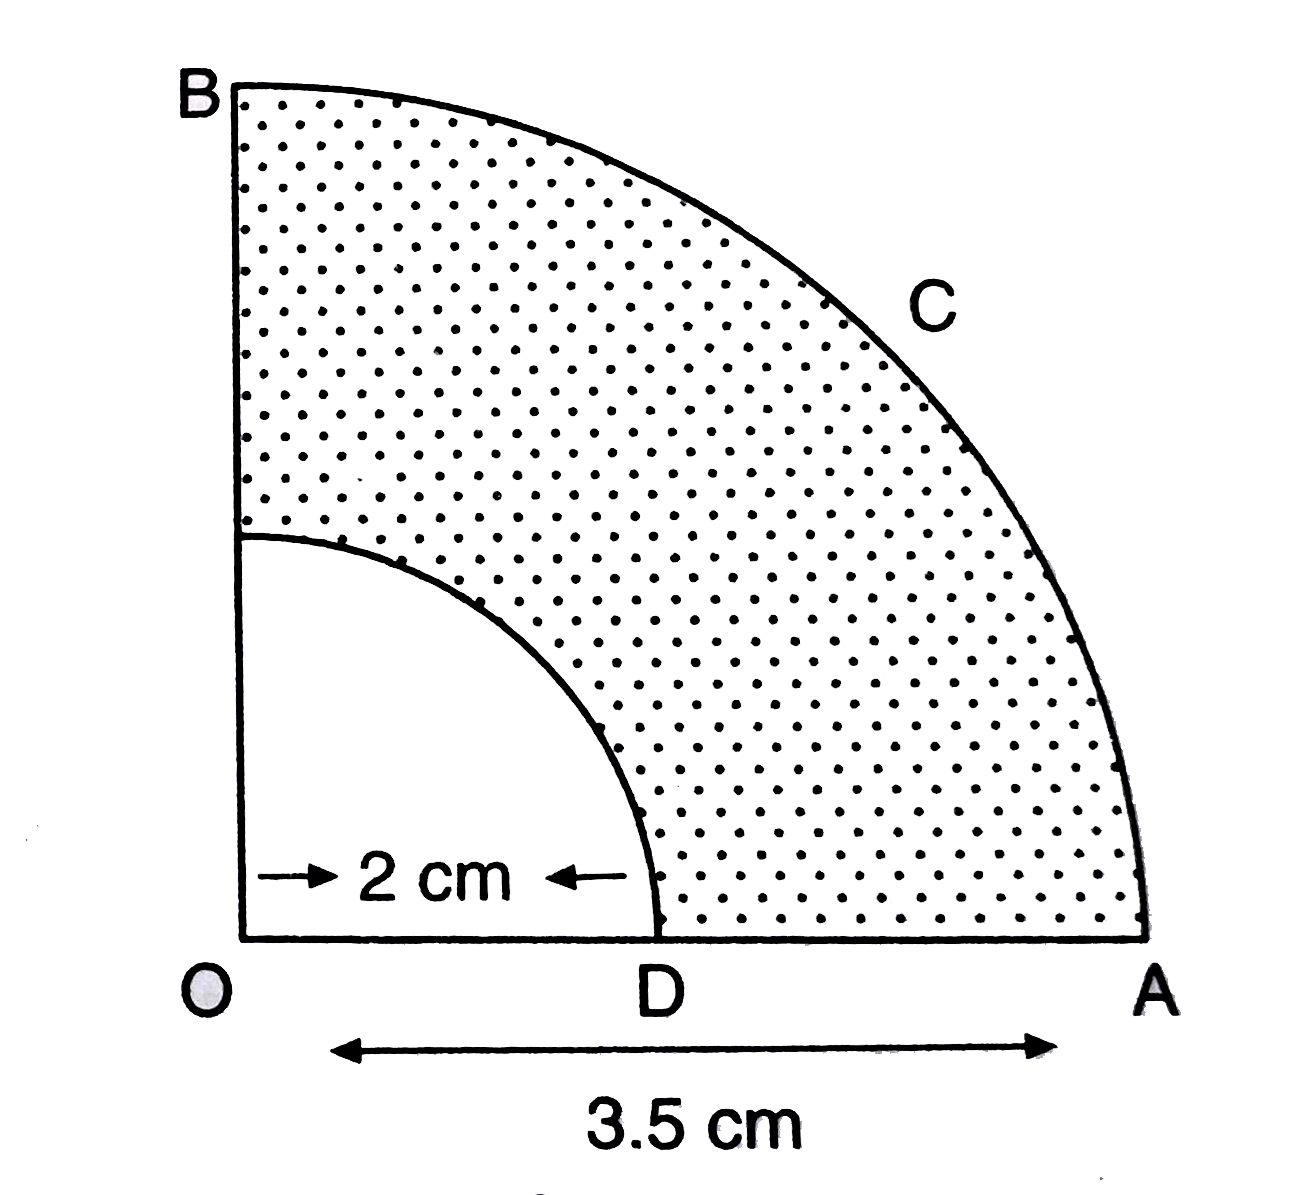 चित्र में, OACB केन्द्र O तथा त्रिज्या 3.5 सेमी. वाले एक वृत्त का चतुर्थांश है | यदि OD = 2 सेमी. हो, तो      चतुर्थांश OACB तथा छायांकित भाग का क्षेत्रफल ज्ञात कीजिए